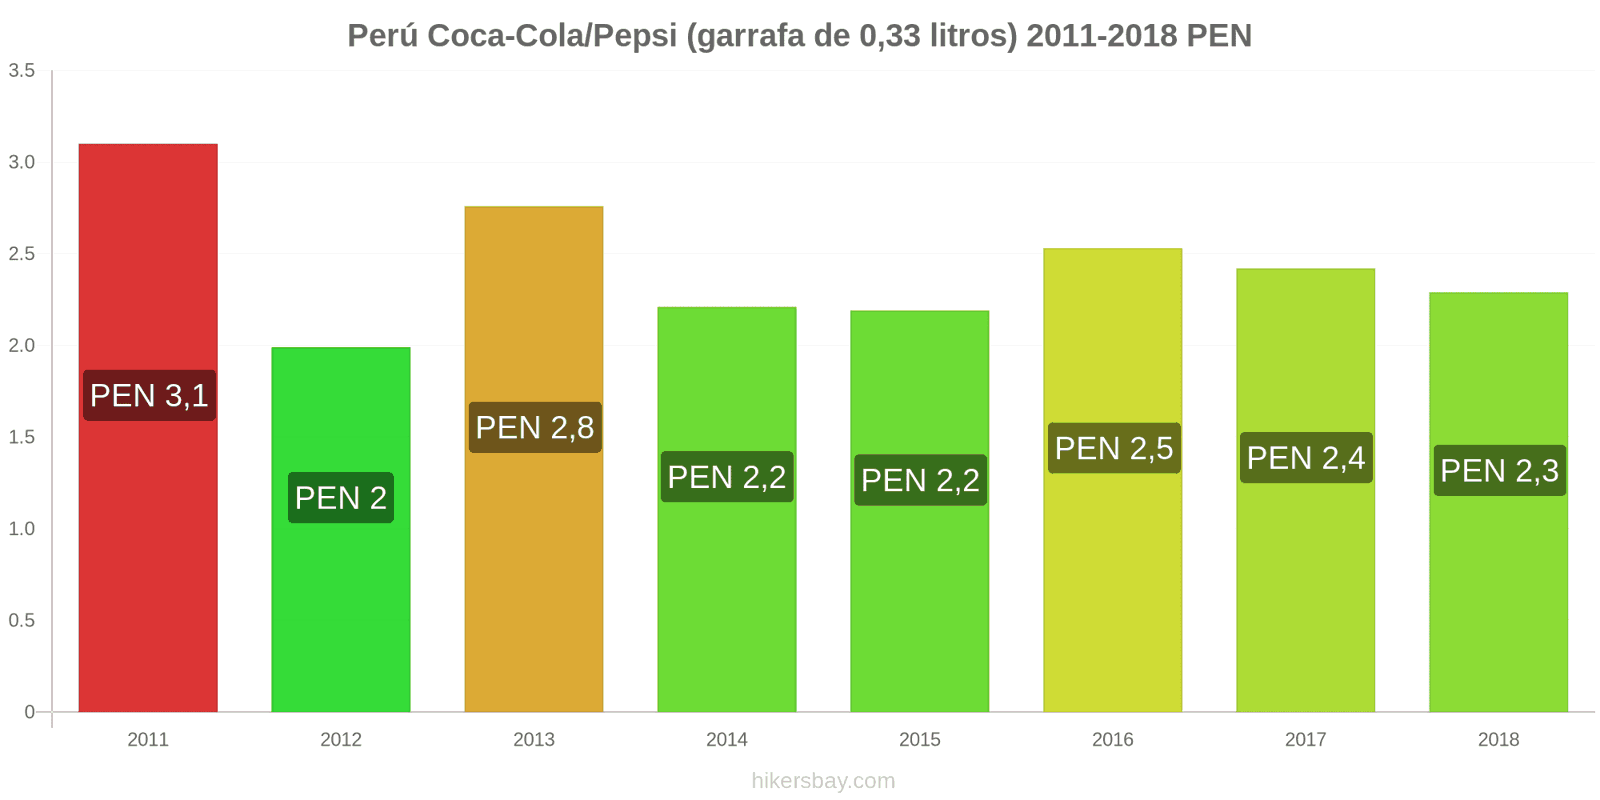 Perú mudanças de preços Coca-Cola/Pepsi (garrafa de 0.33 litros) hikersbay.com